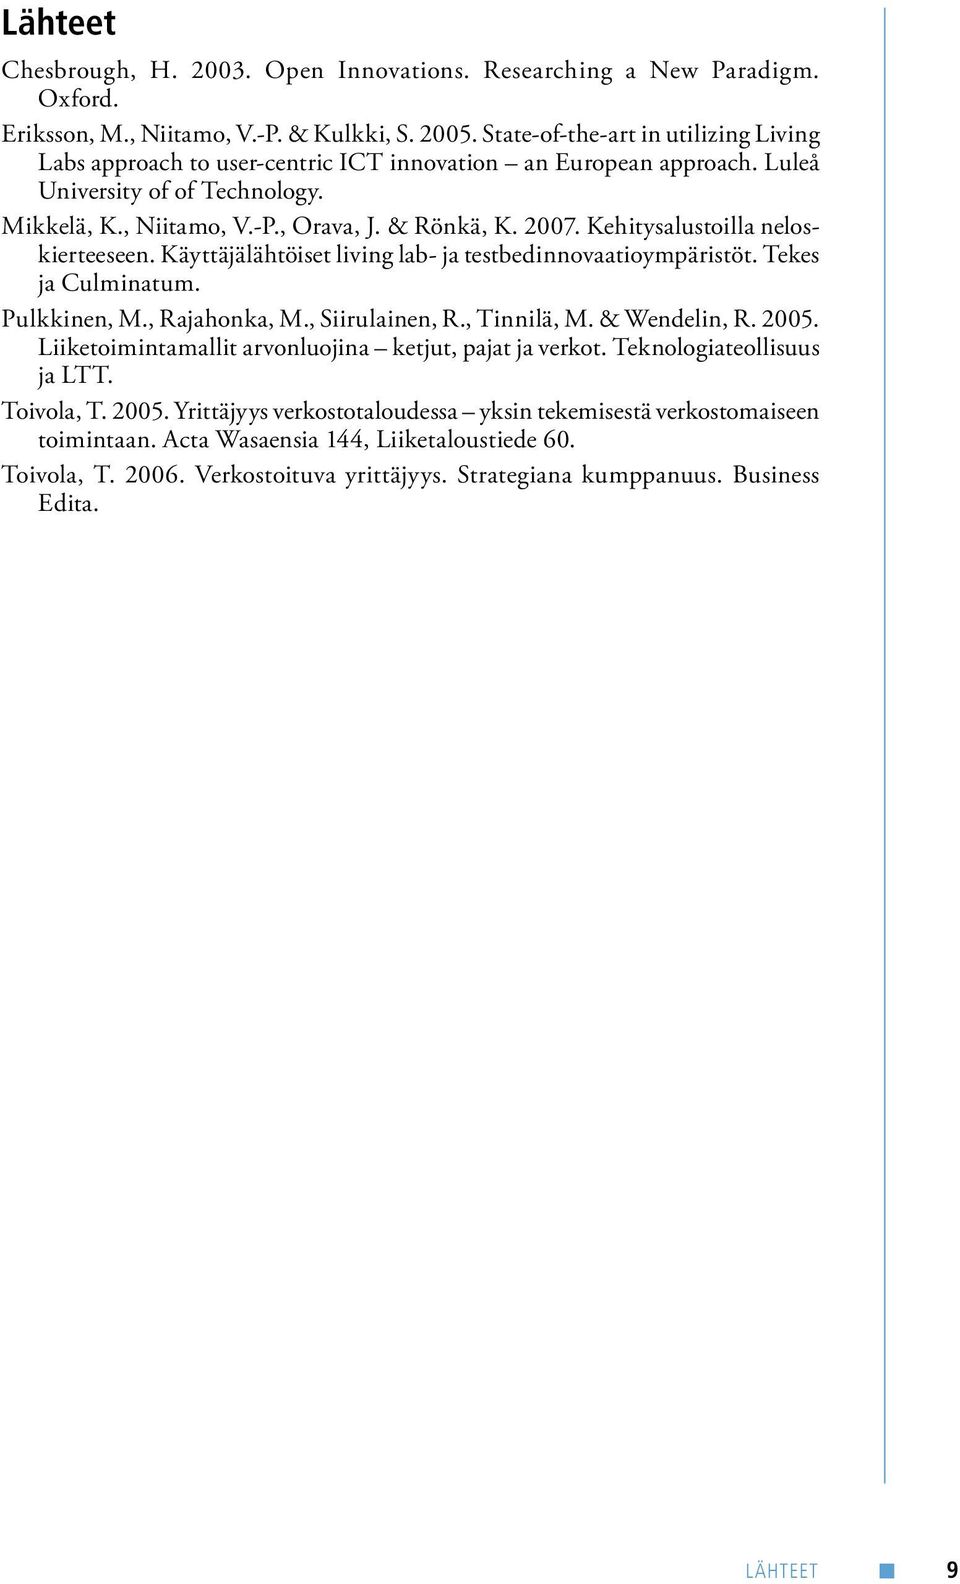 Kehitysalustoilla neloskierteeseen. Käyttäjälähtöiset living lab- ja testbedinnovaatioympäristöt. Tekes ja Culminatum. Pulkkinen, M., Rajahonka, M., Siirulainen, R., Tinnilä, M. & Wendelin, R. 2005.